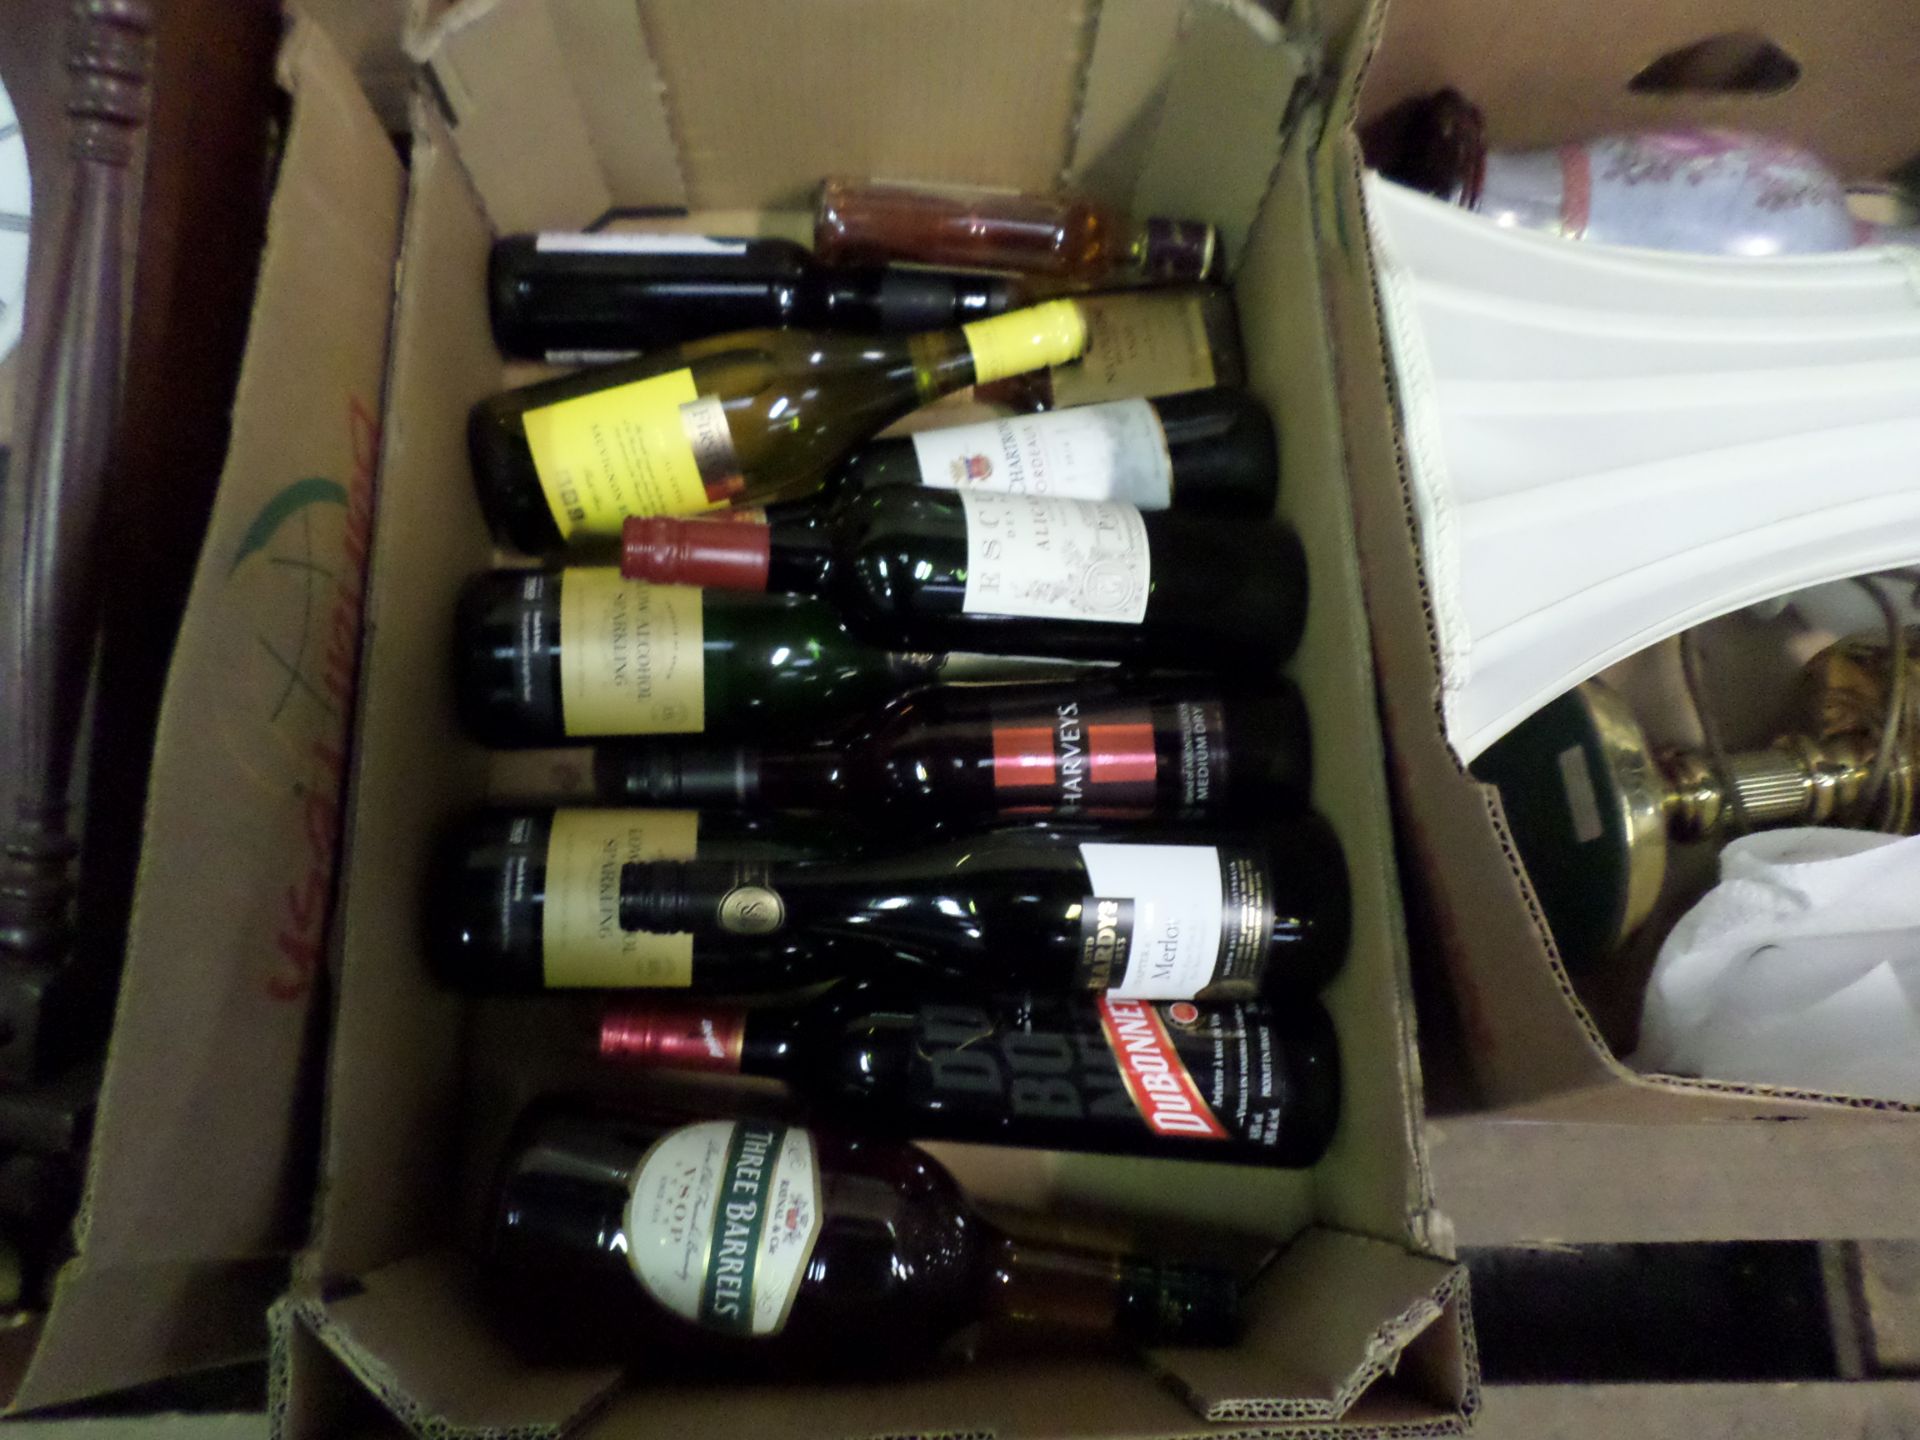 Box of wines & spirits